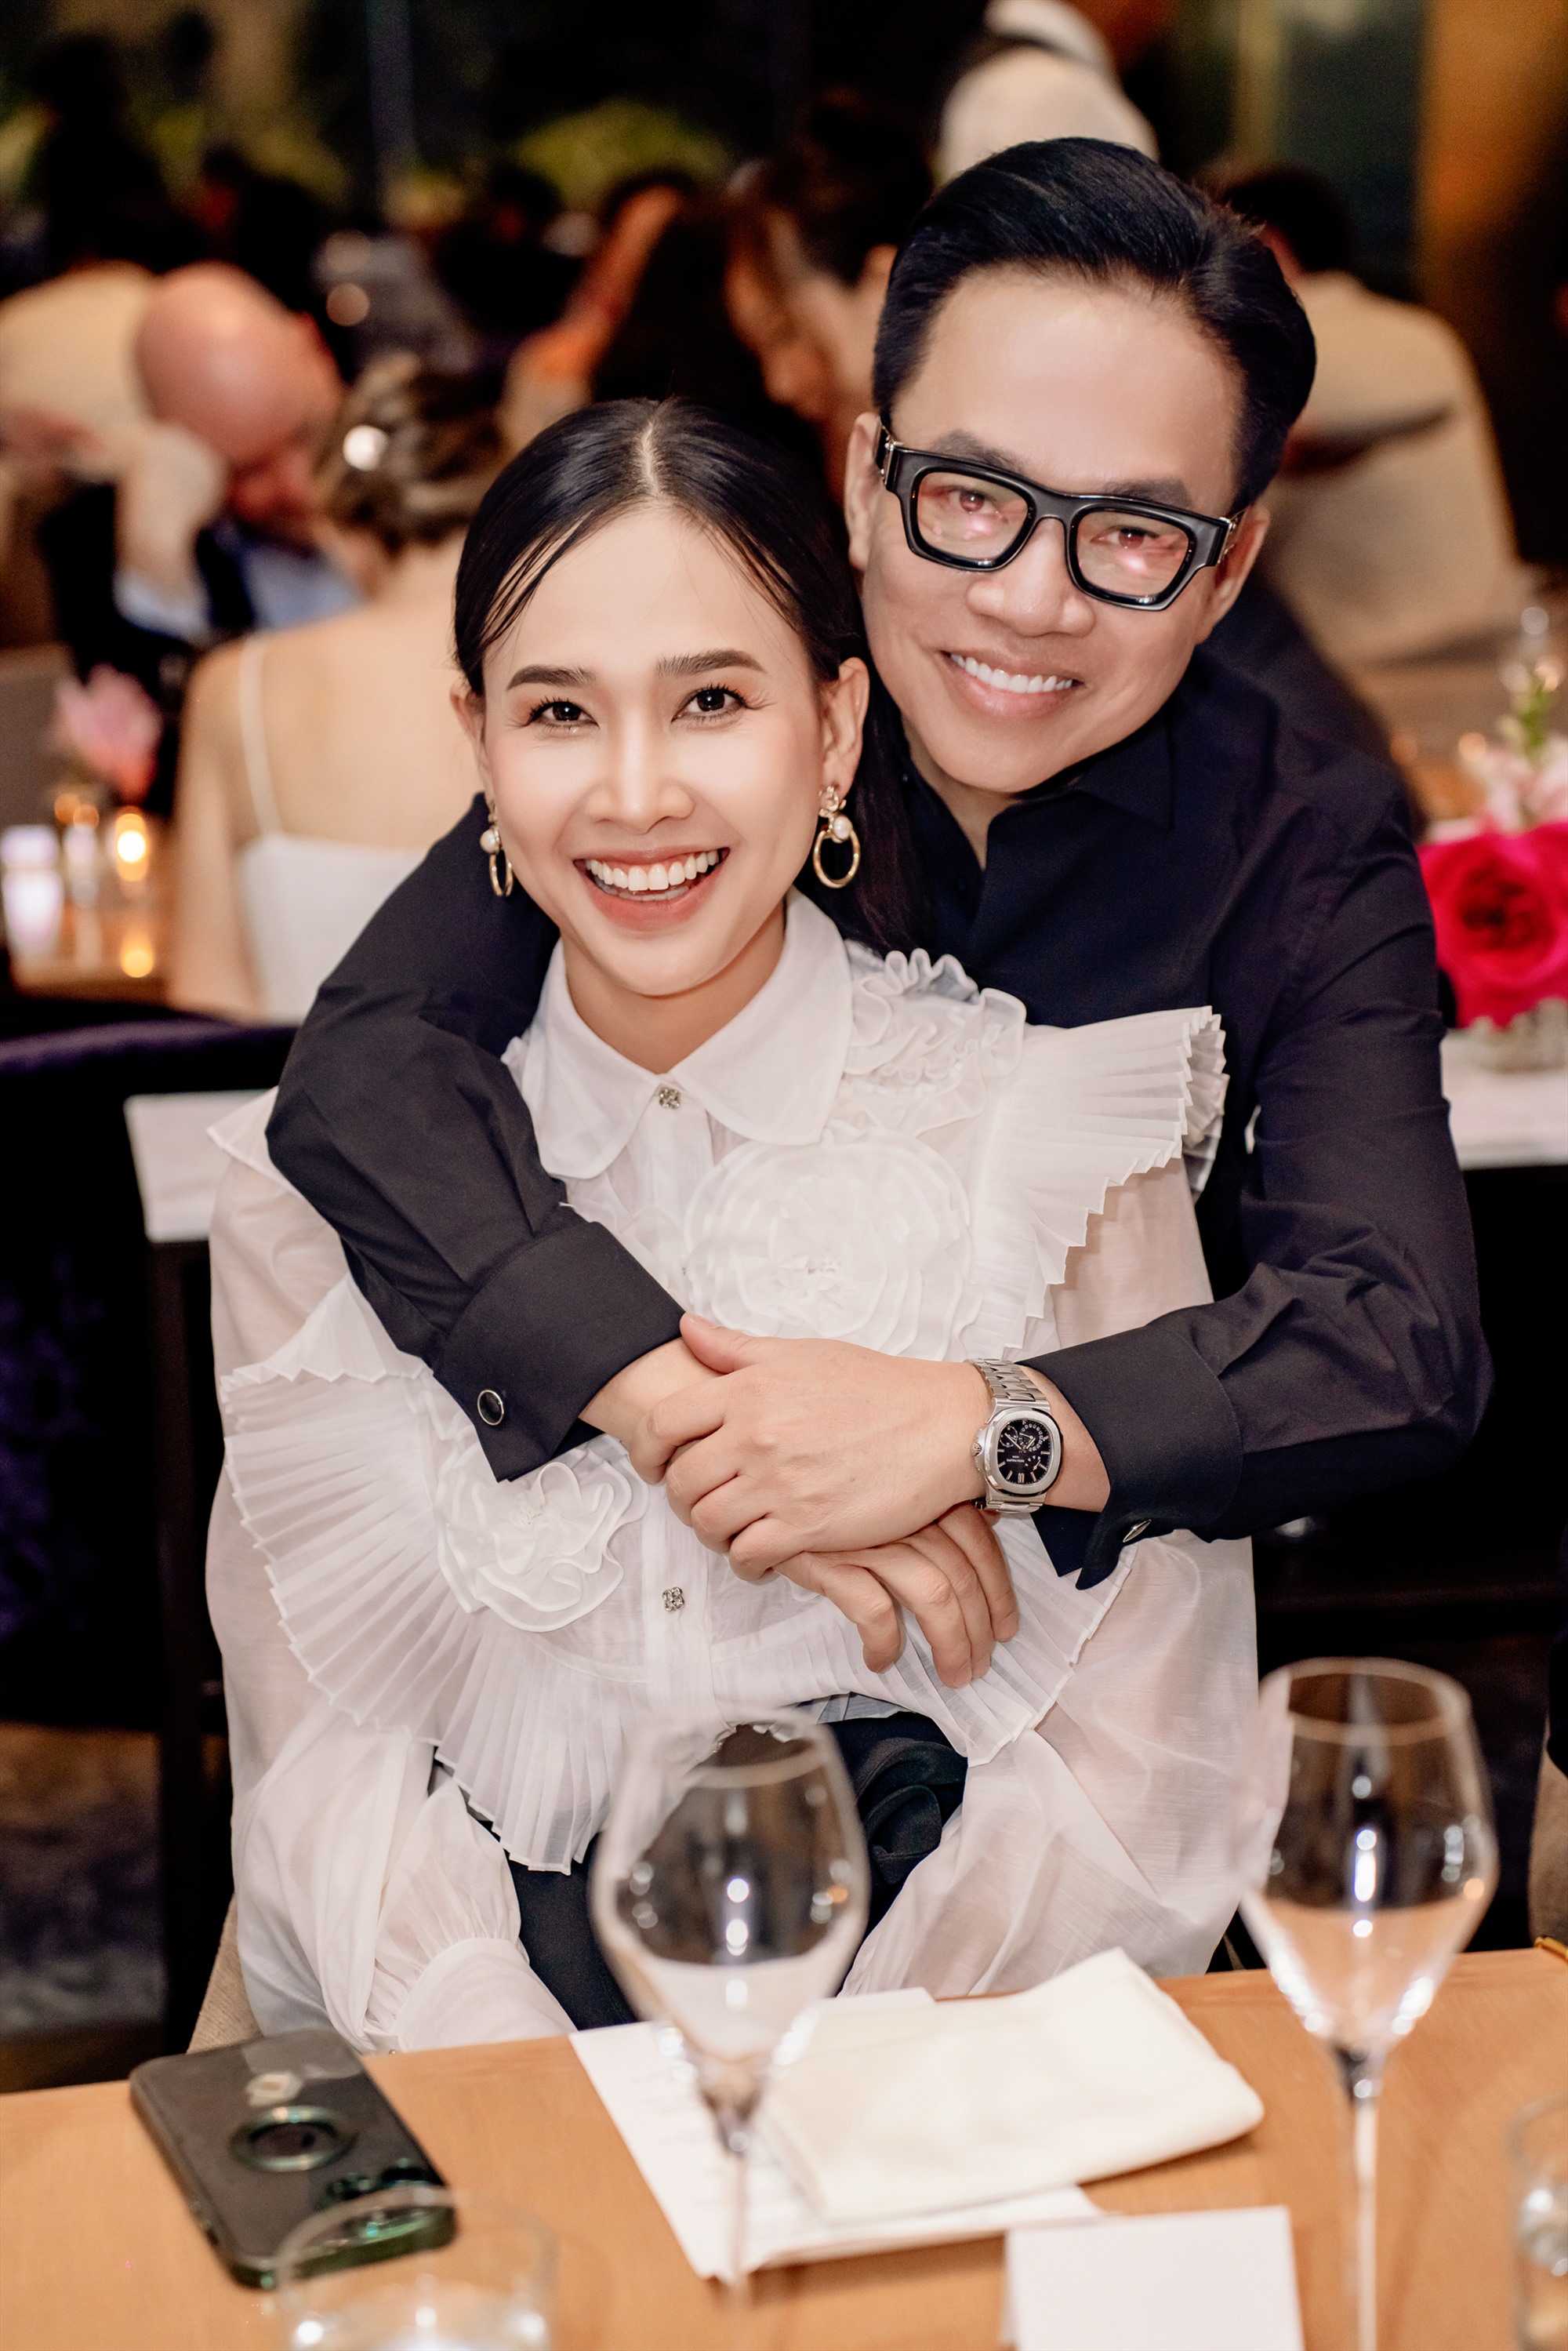 Hoa hậu Dương Mỹ Linh vui vẻ khi tái ngộ với người anh thân thiết - CEO Phạm Huy Cận tại bữa tiệc tổ chức ở Mỹ. Ảnh: Kanu Phan